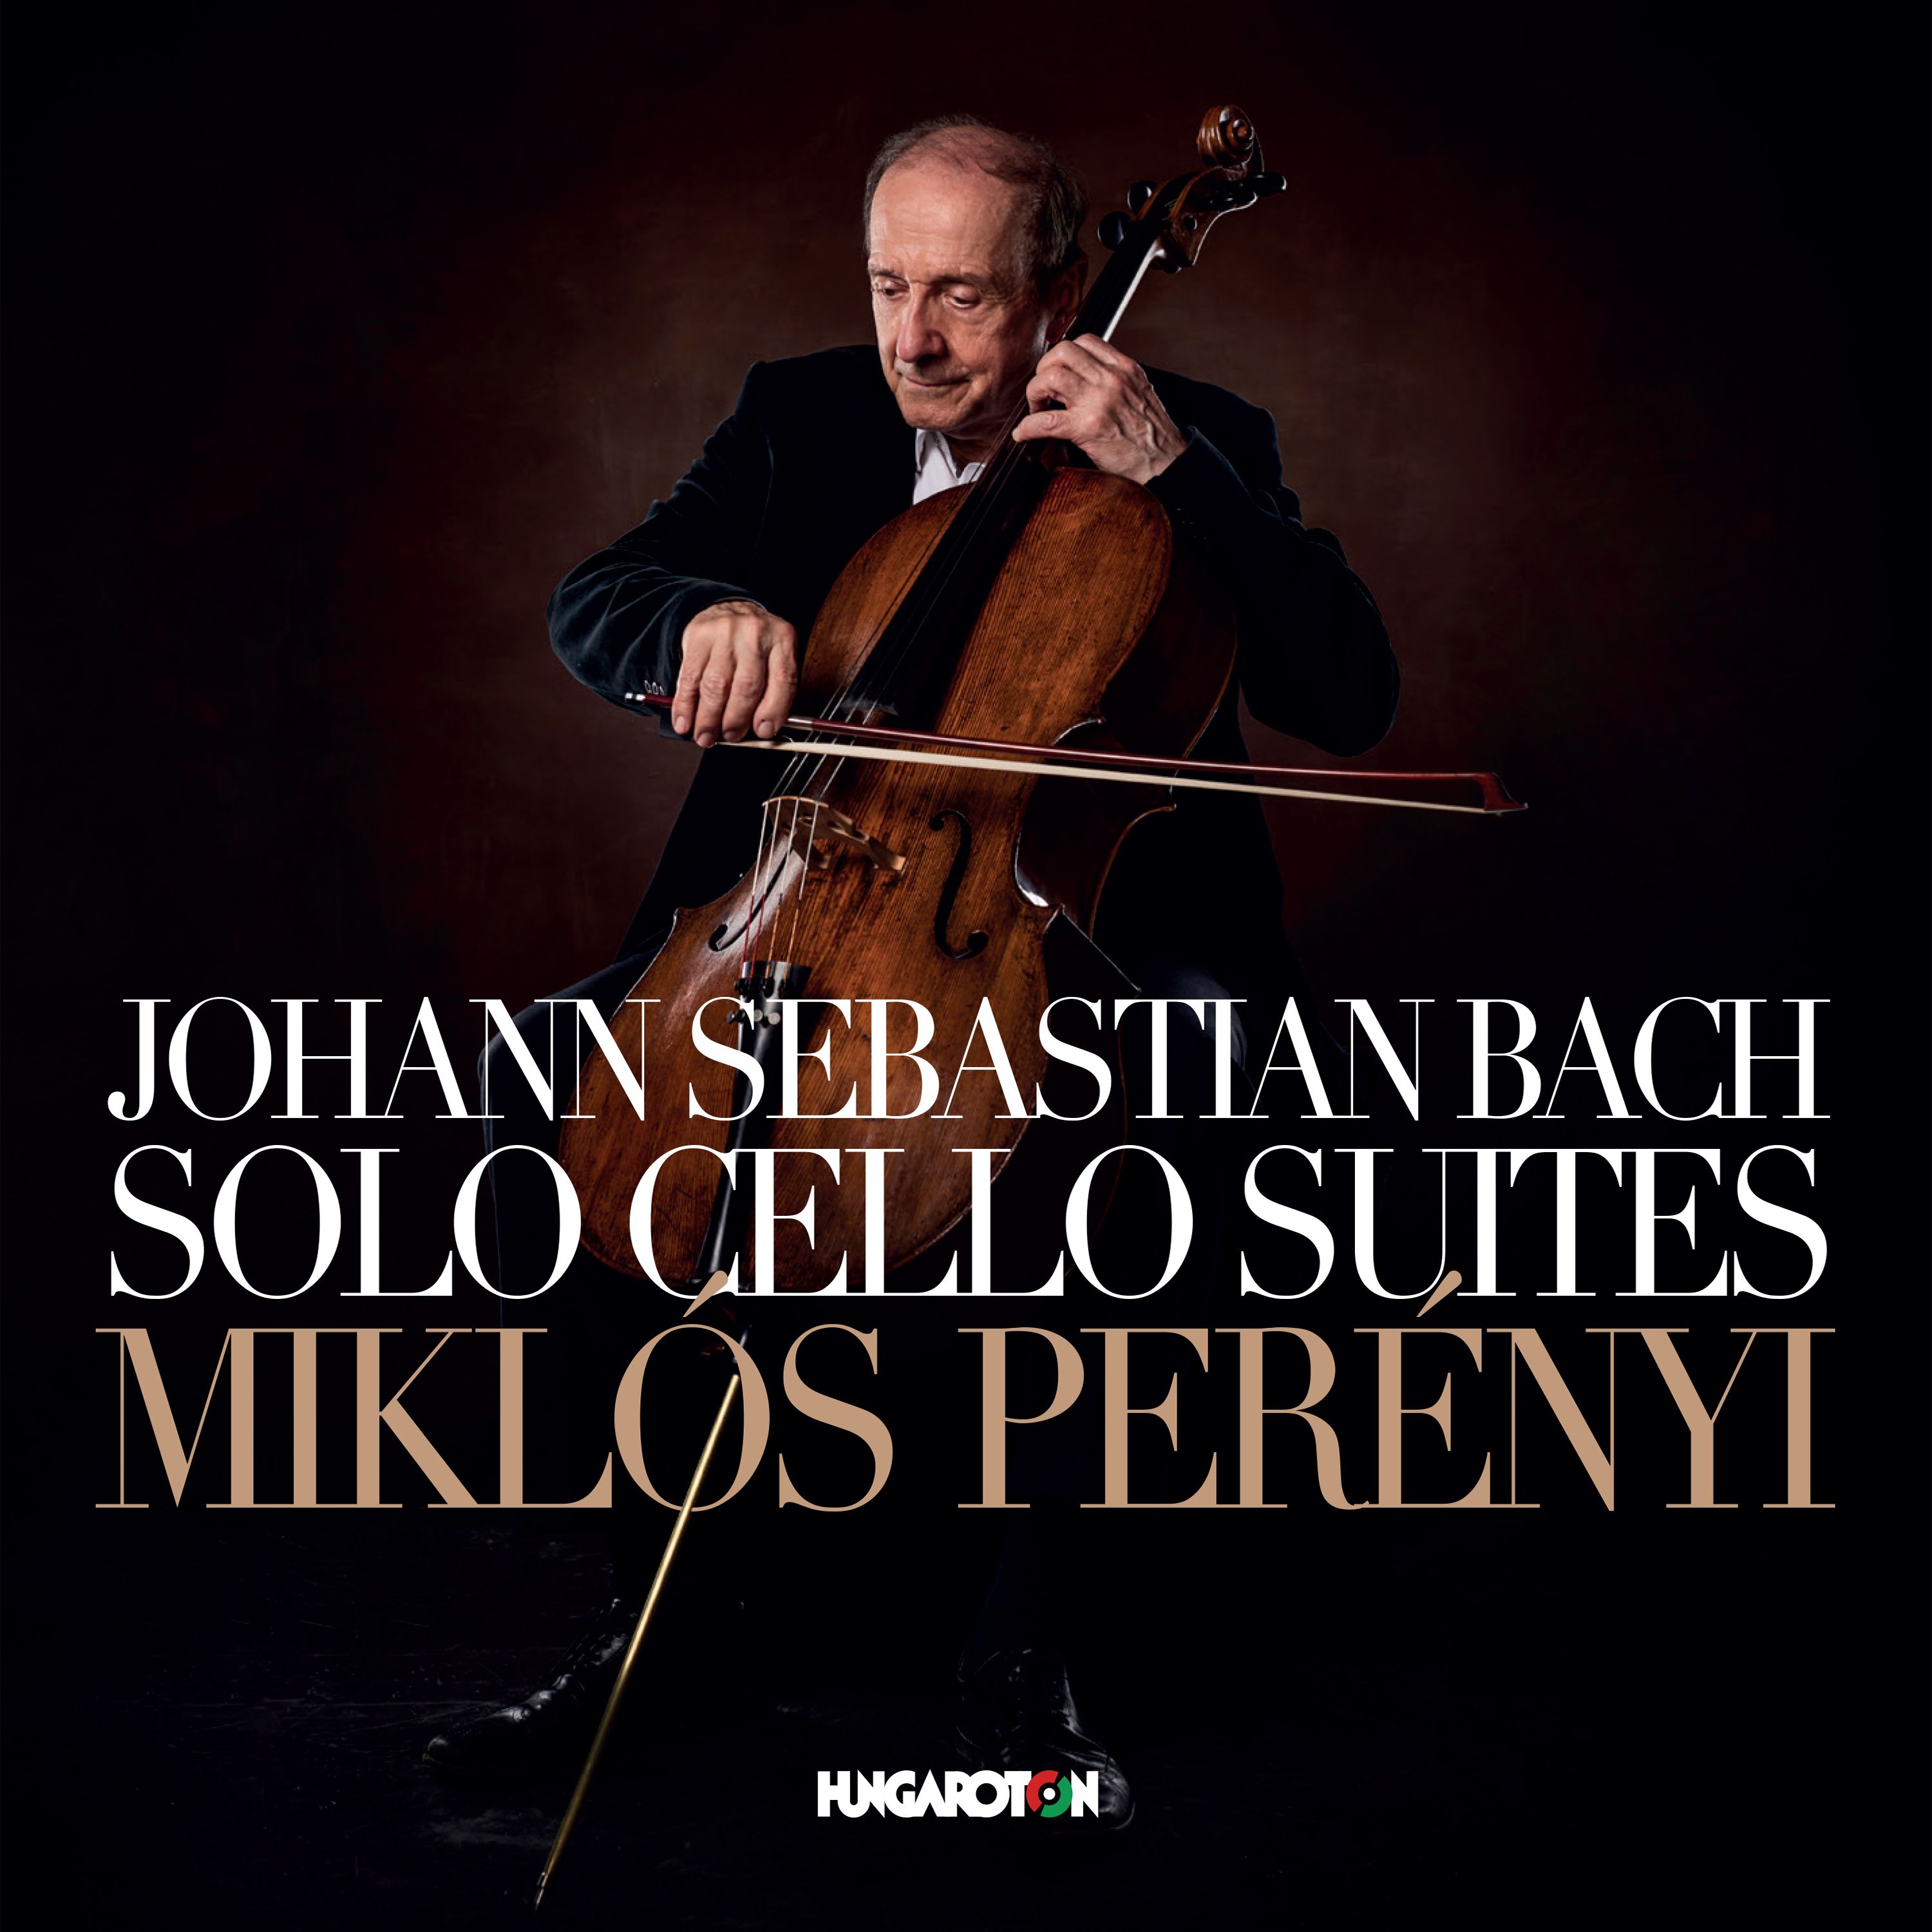 Bach - SOLO CELLO SUITES 2CD PERÉNYI